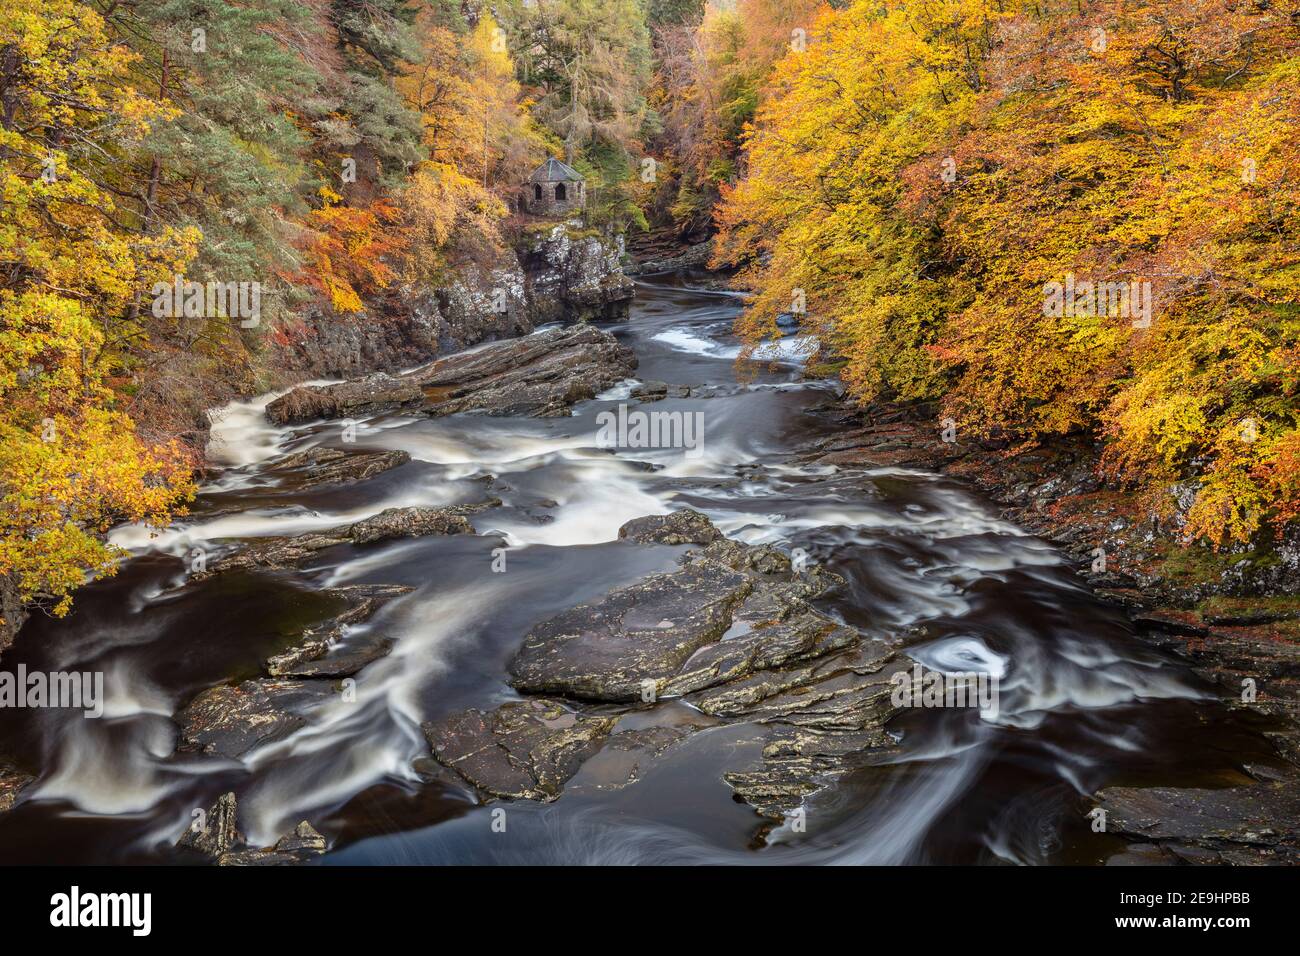 Western Highlands, Scozia: Foresta d'autunno e rifugio panoramico sul fiume Moriston nella città di Invermoriston. Foto Stock